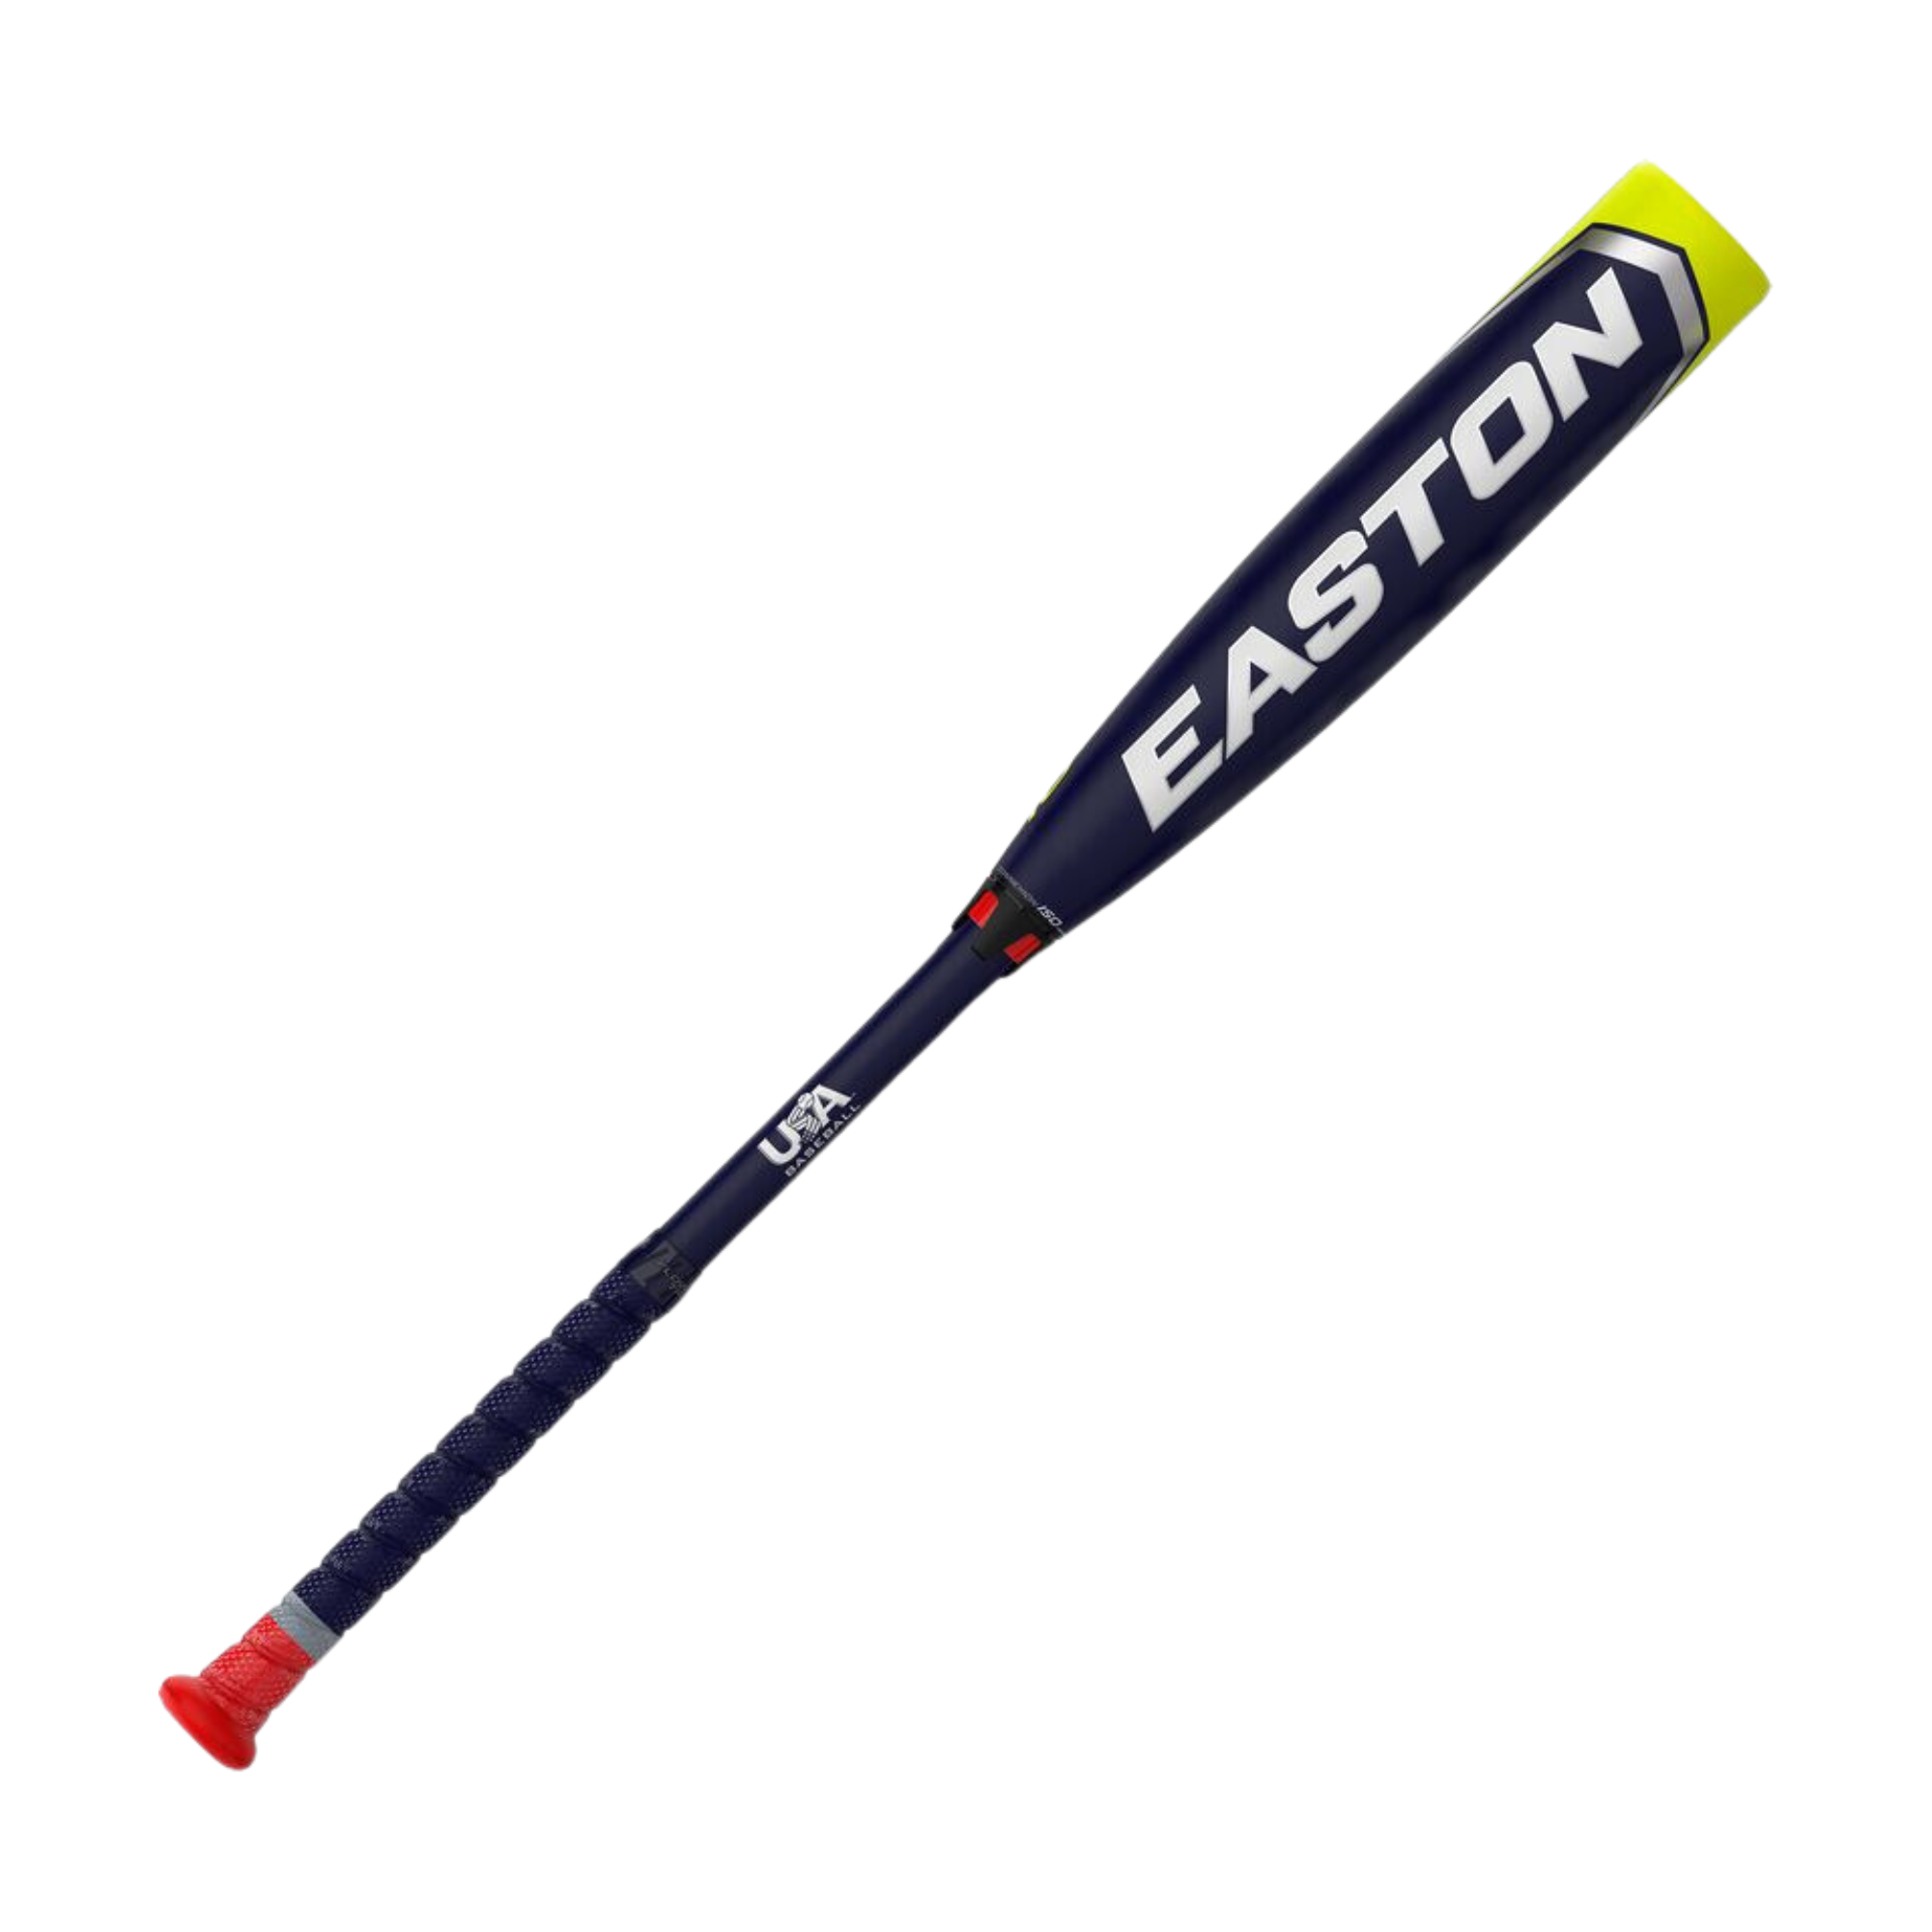 Easton ADV 360 USA 2 5/8 Baseball Bat (-11) - 31 in